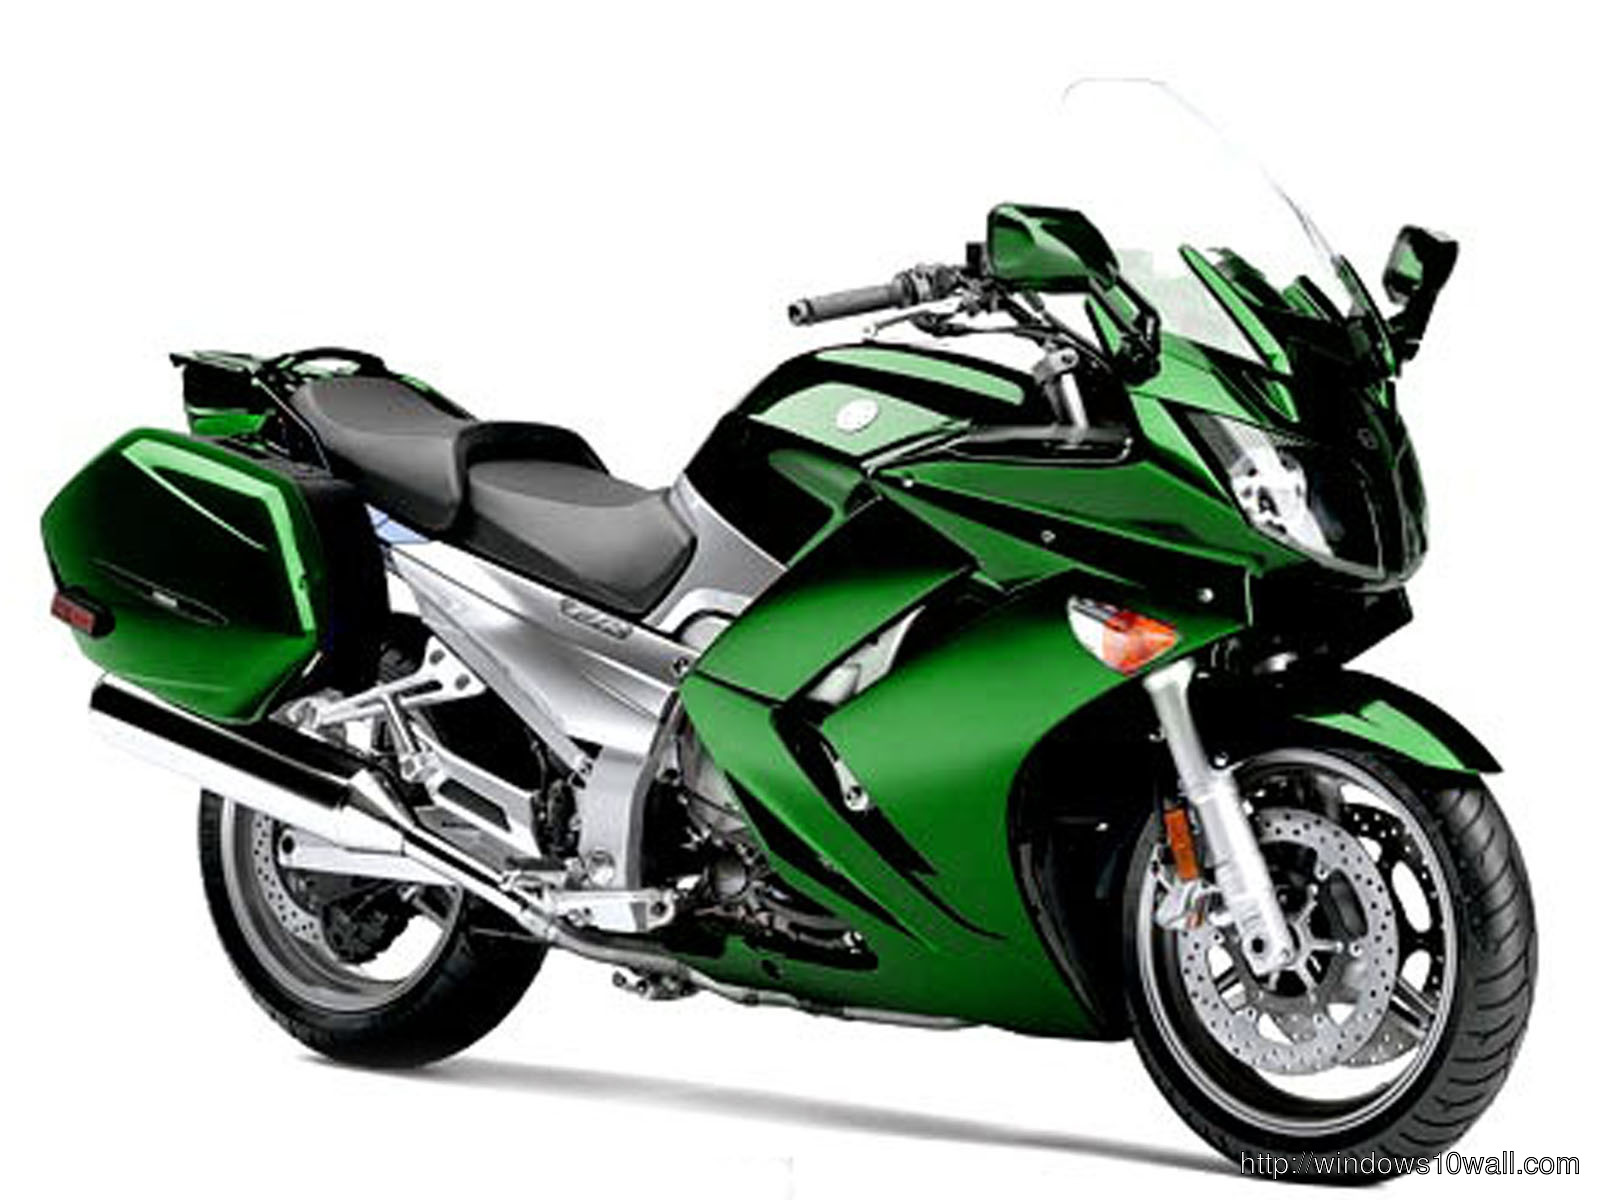 Green color Yamaha FJR1300 2012 Background Wallpaper 58